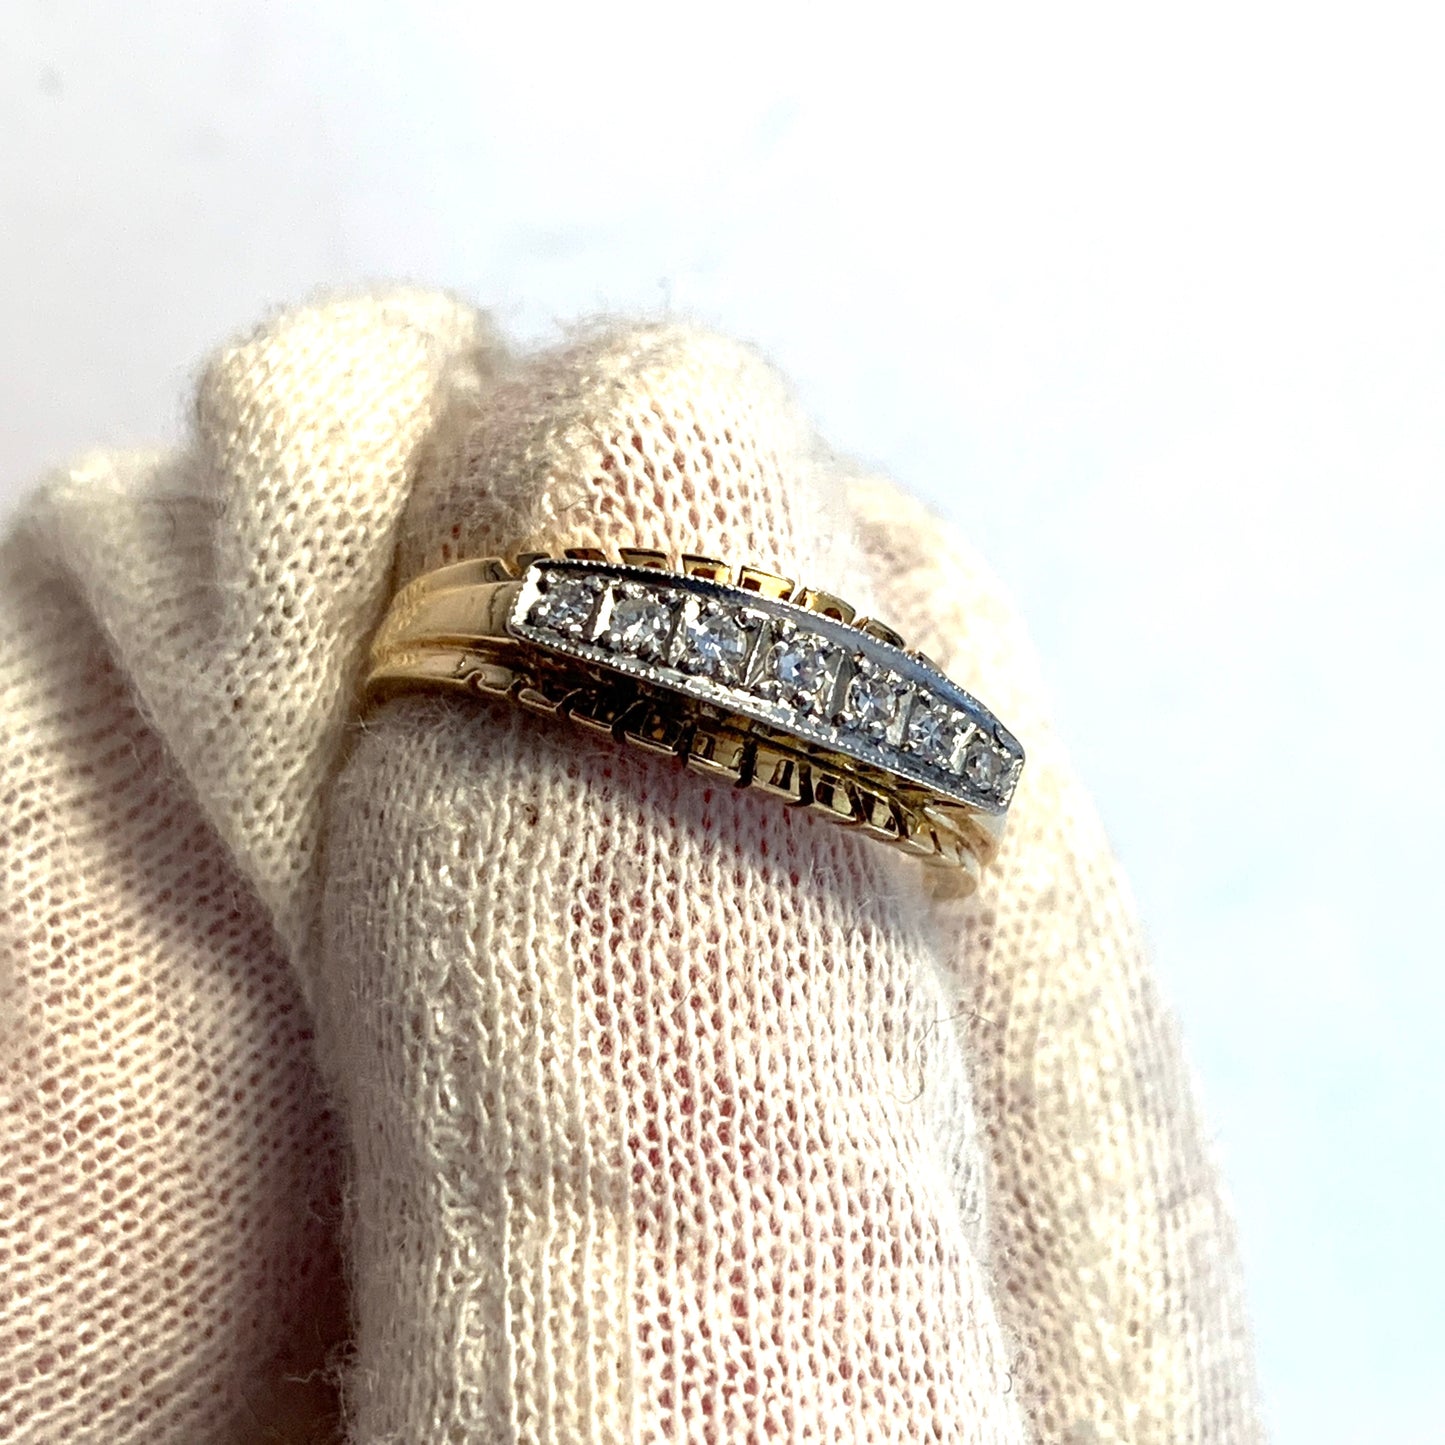 Kjeld Jacobsen, Copenhagen. c 1950s. 14k Gold Diamond Ring.